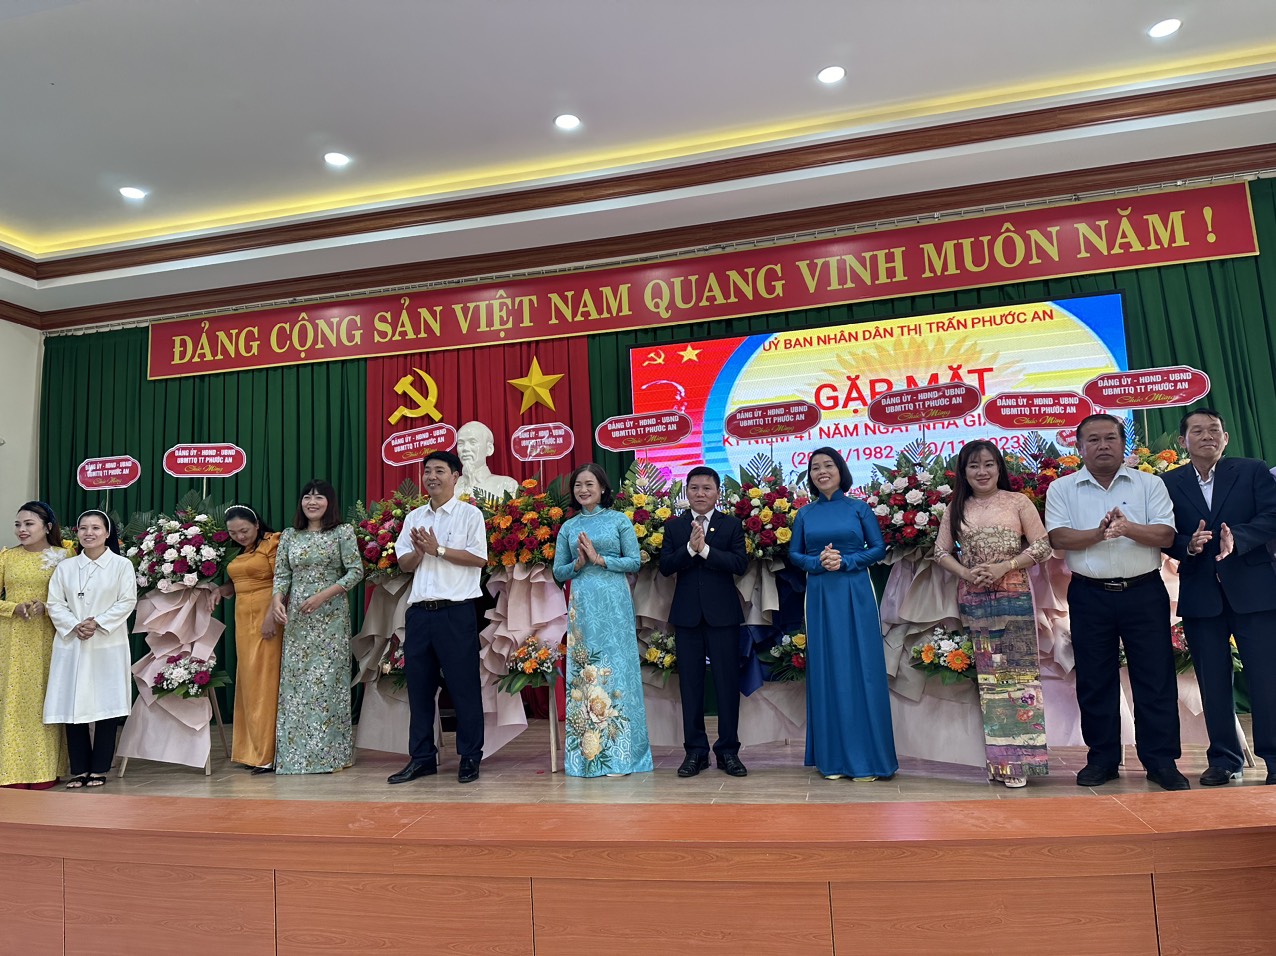 UBND thị trấn Phước An tổ chức gặp mặt kỷ niệm 41 năm ngày Nhà giáo Việt Nam (20/11/1982 - 20/11/2023).